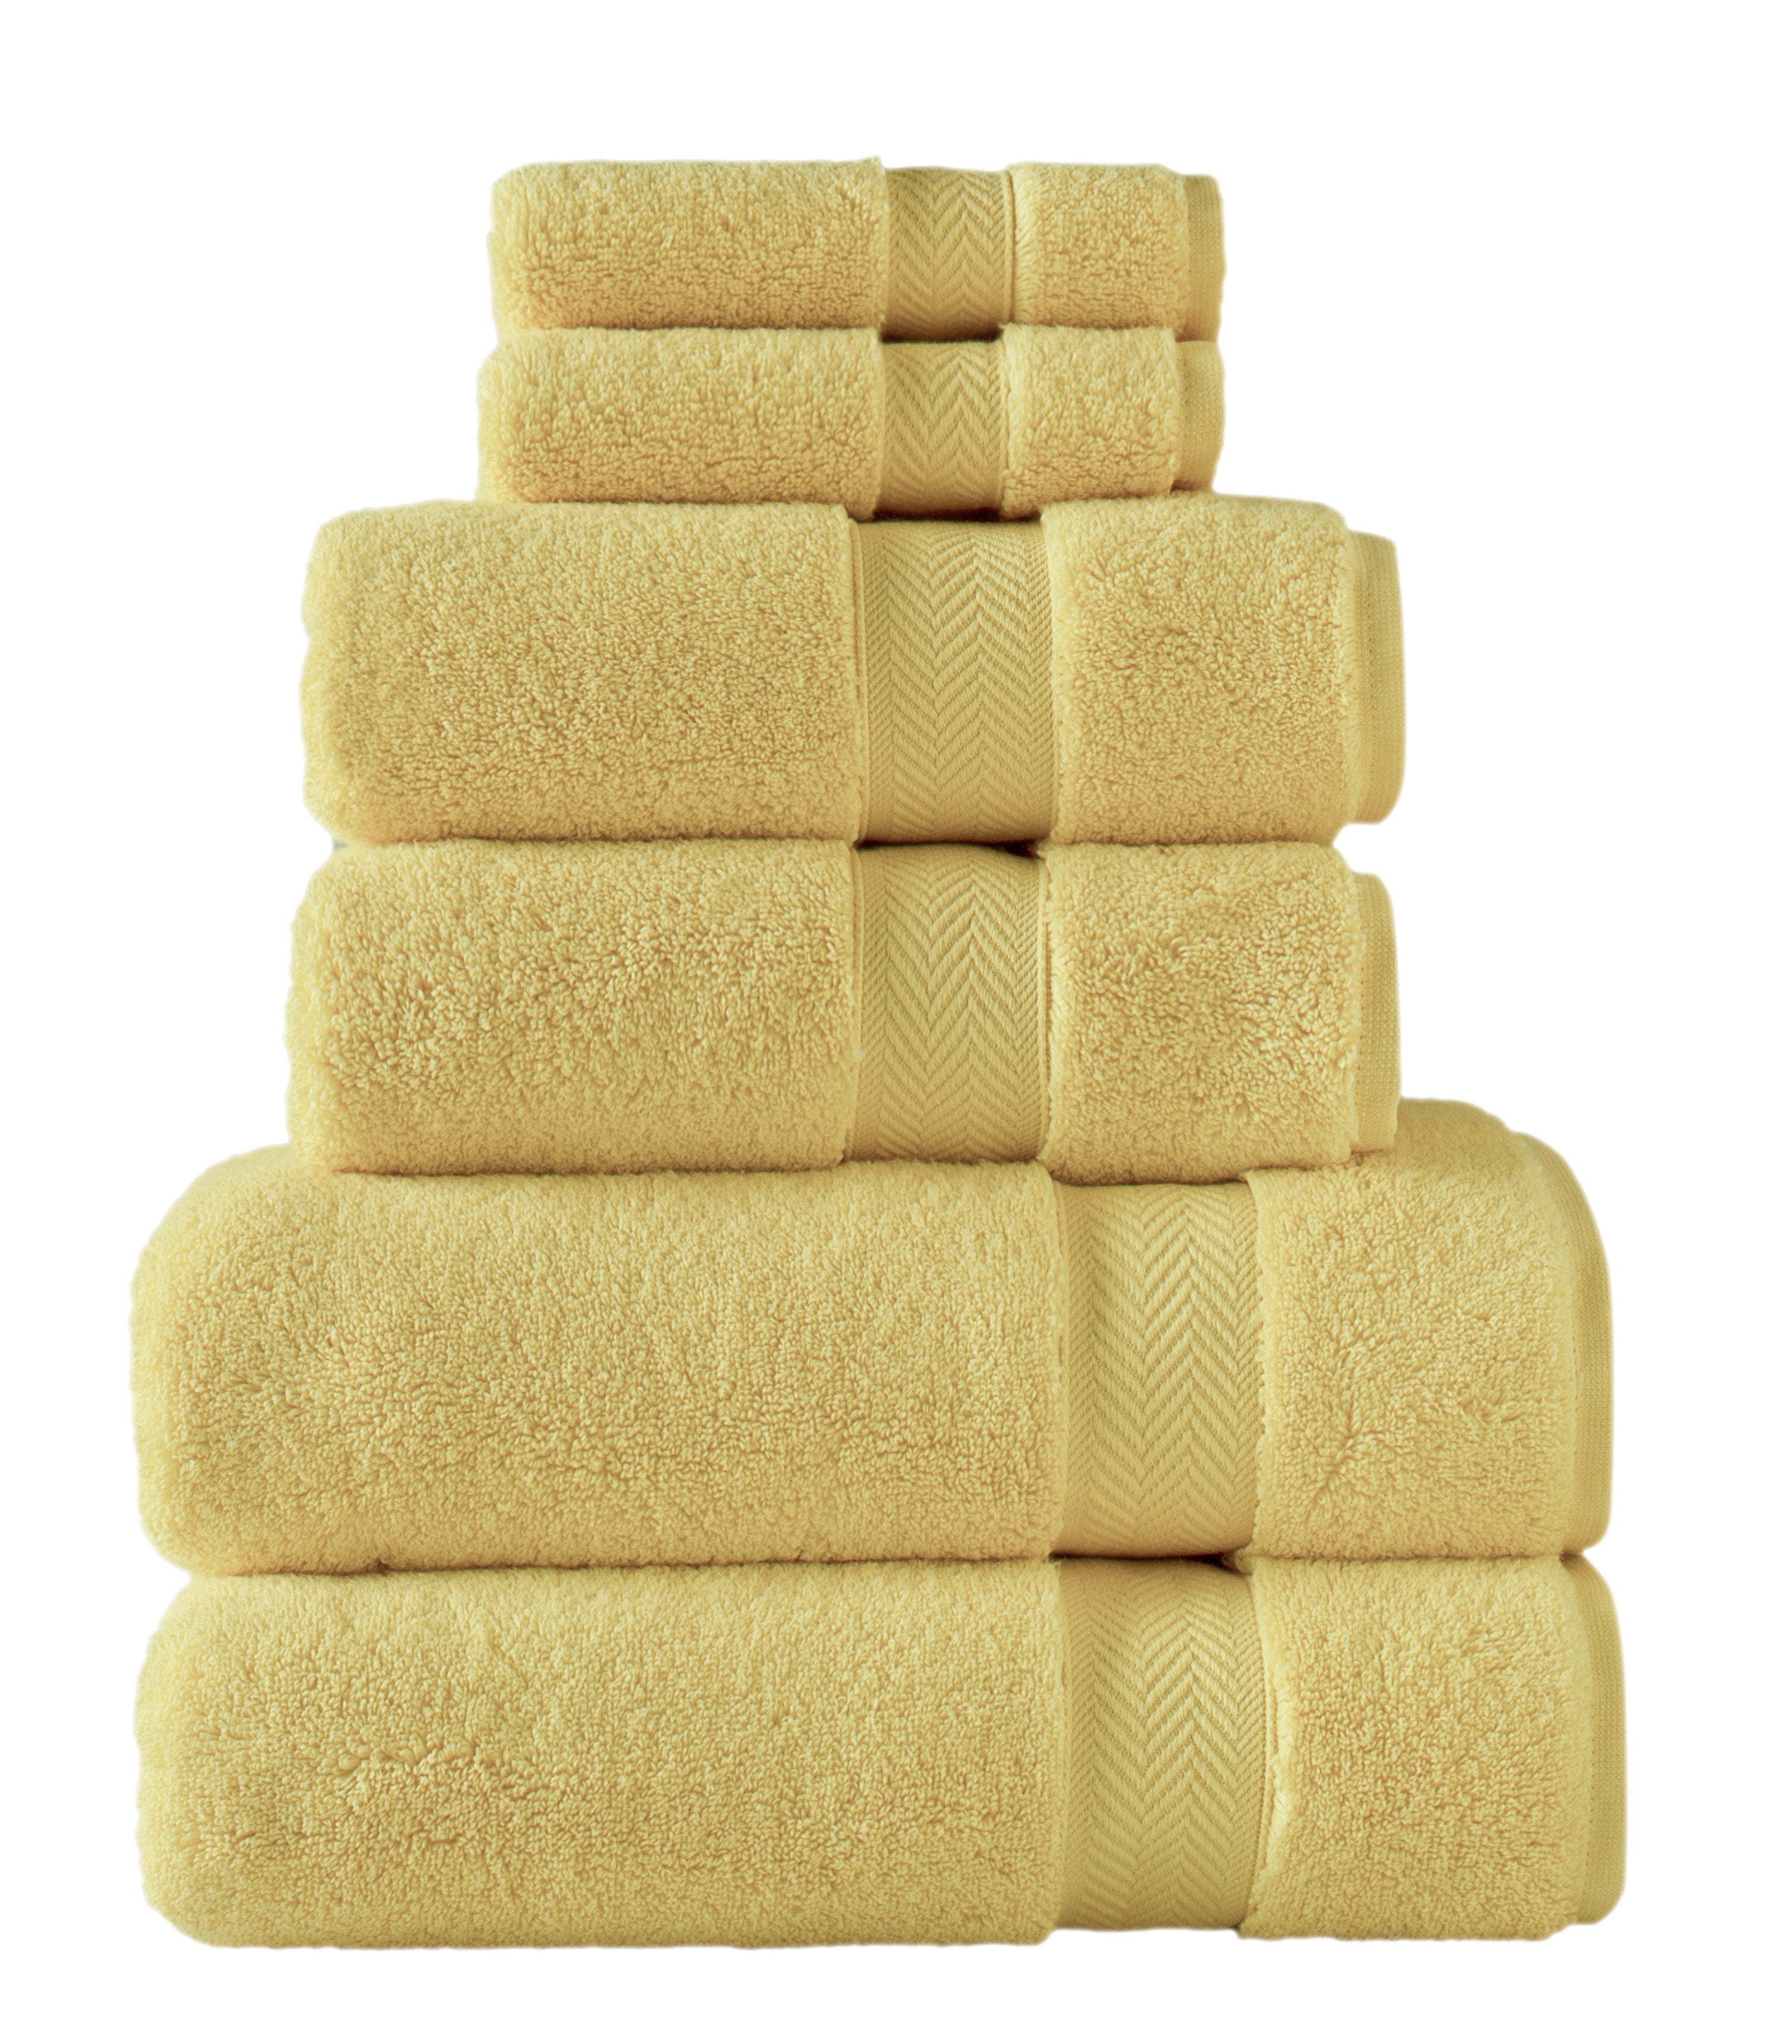 Klassic Collection 6 PK Towels Set - Lemon